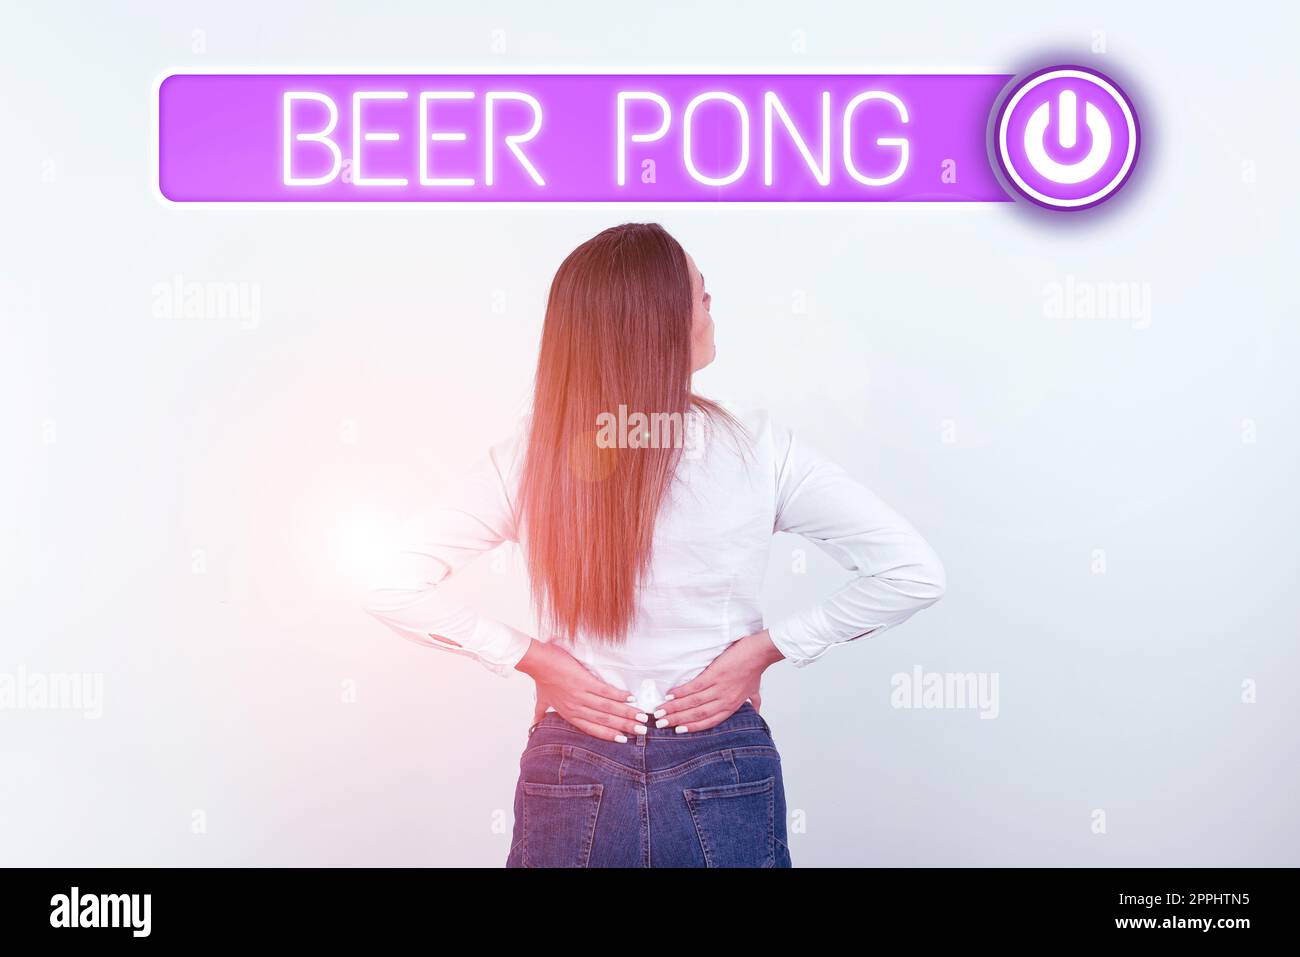 Écriture affichant le texte Beer pong. Idée d'affaires un jeu avec un ensemble de tasses contenant de la bière et rebondir ou lancer une boule de ping-pong Banque D'Images